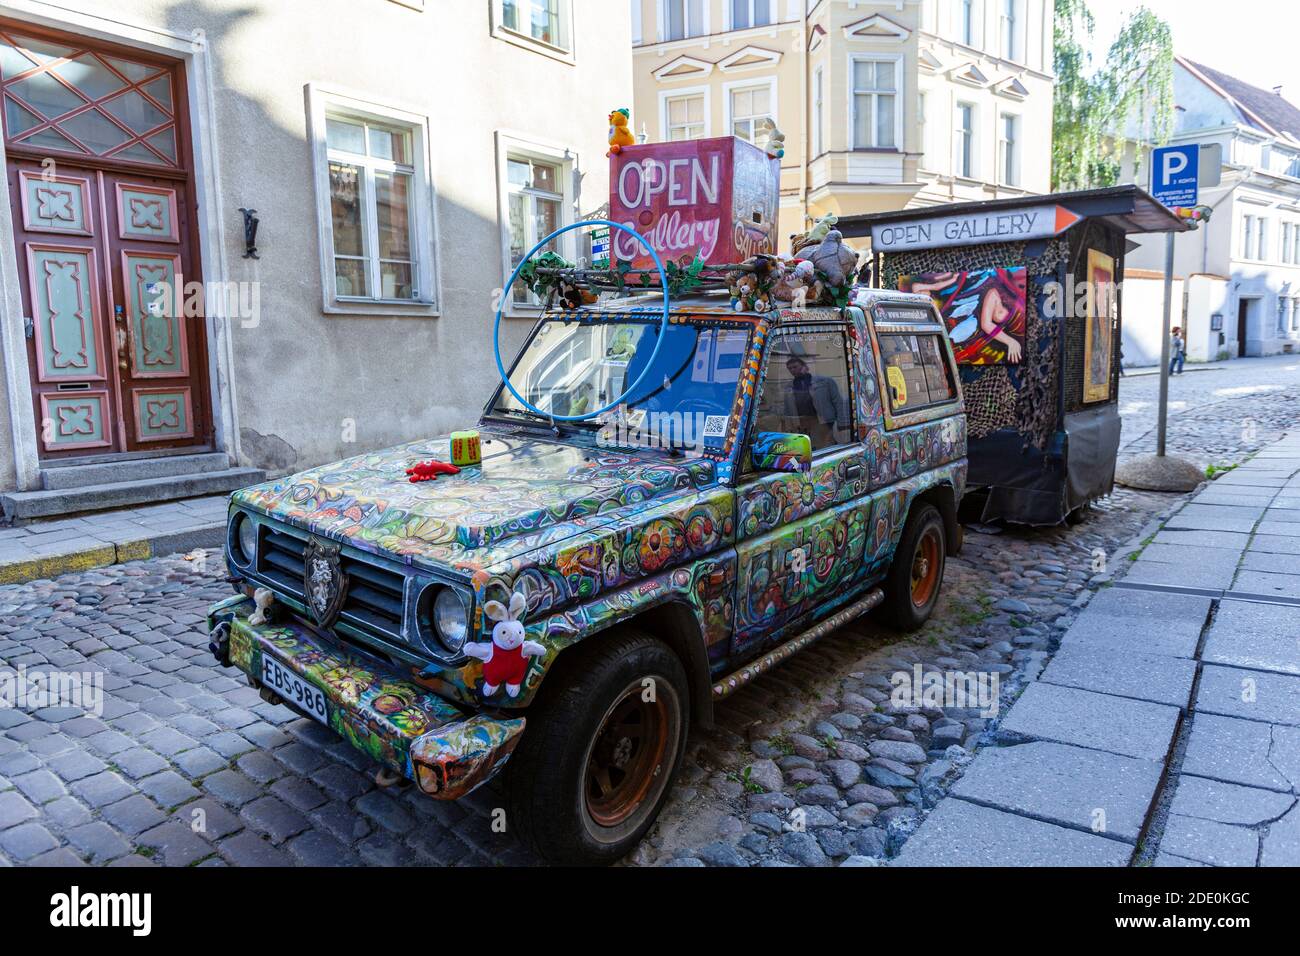 Jeep artístico pintado de Neeme Lall publicidad Open Gallery exposición en el casco antiguo, Tallin, Estonia Foto de stock